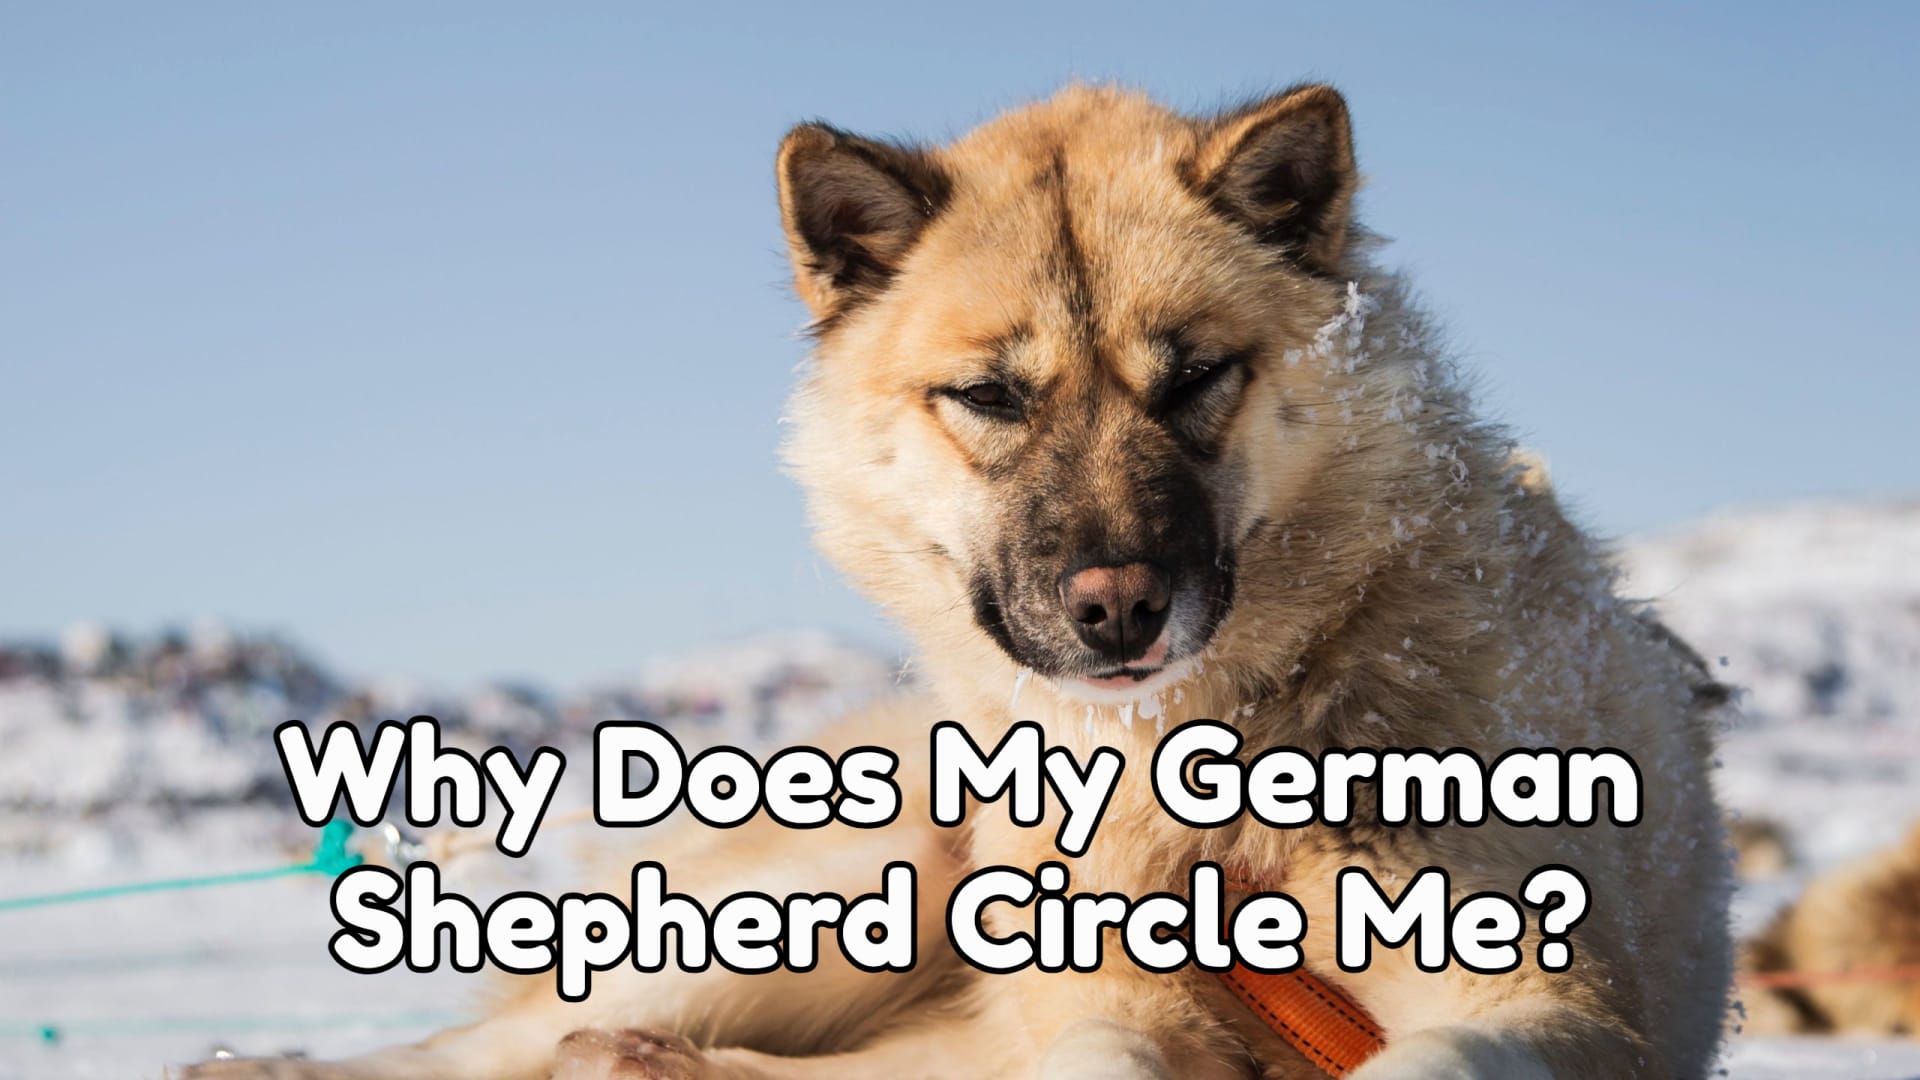 Why Does My German shepherd Circle Me?